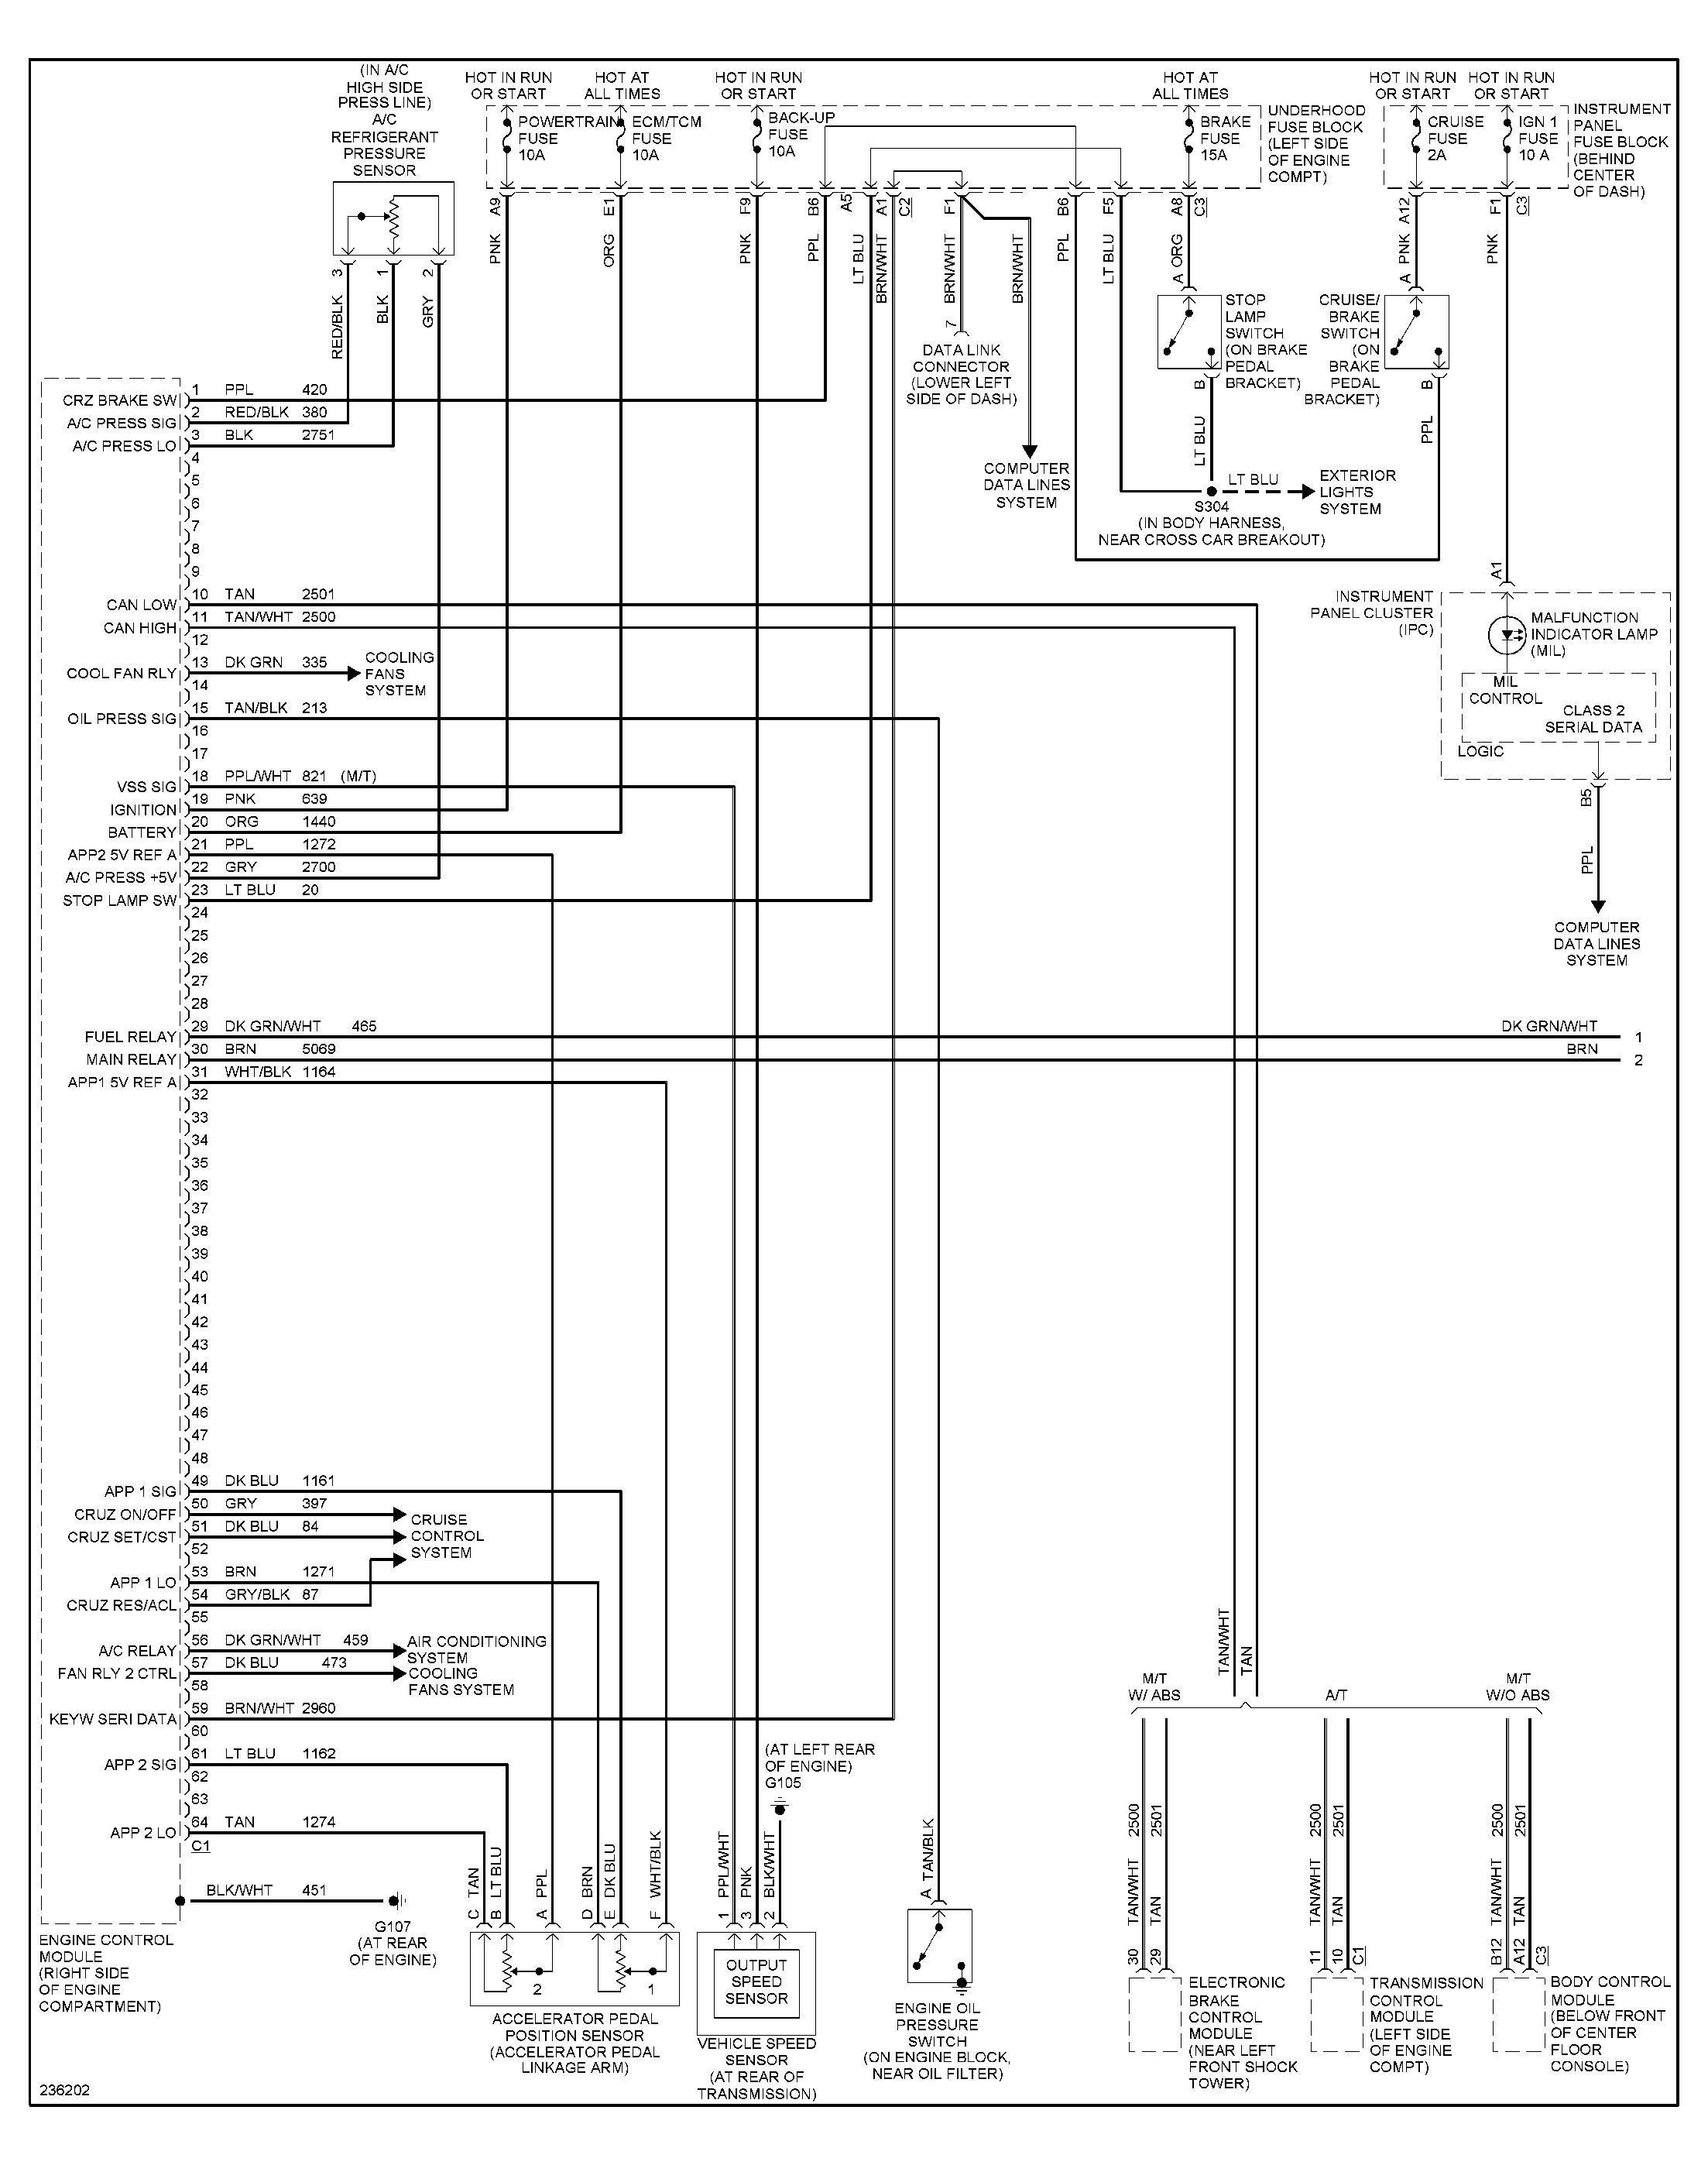 30 Amp Rv Male Plug Wiring Diagram from schematron.org